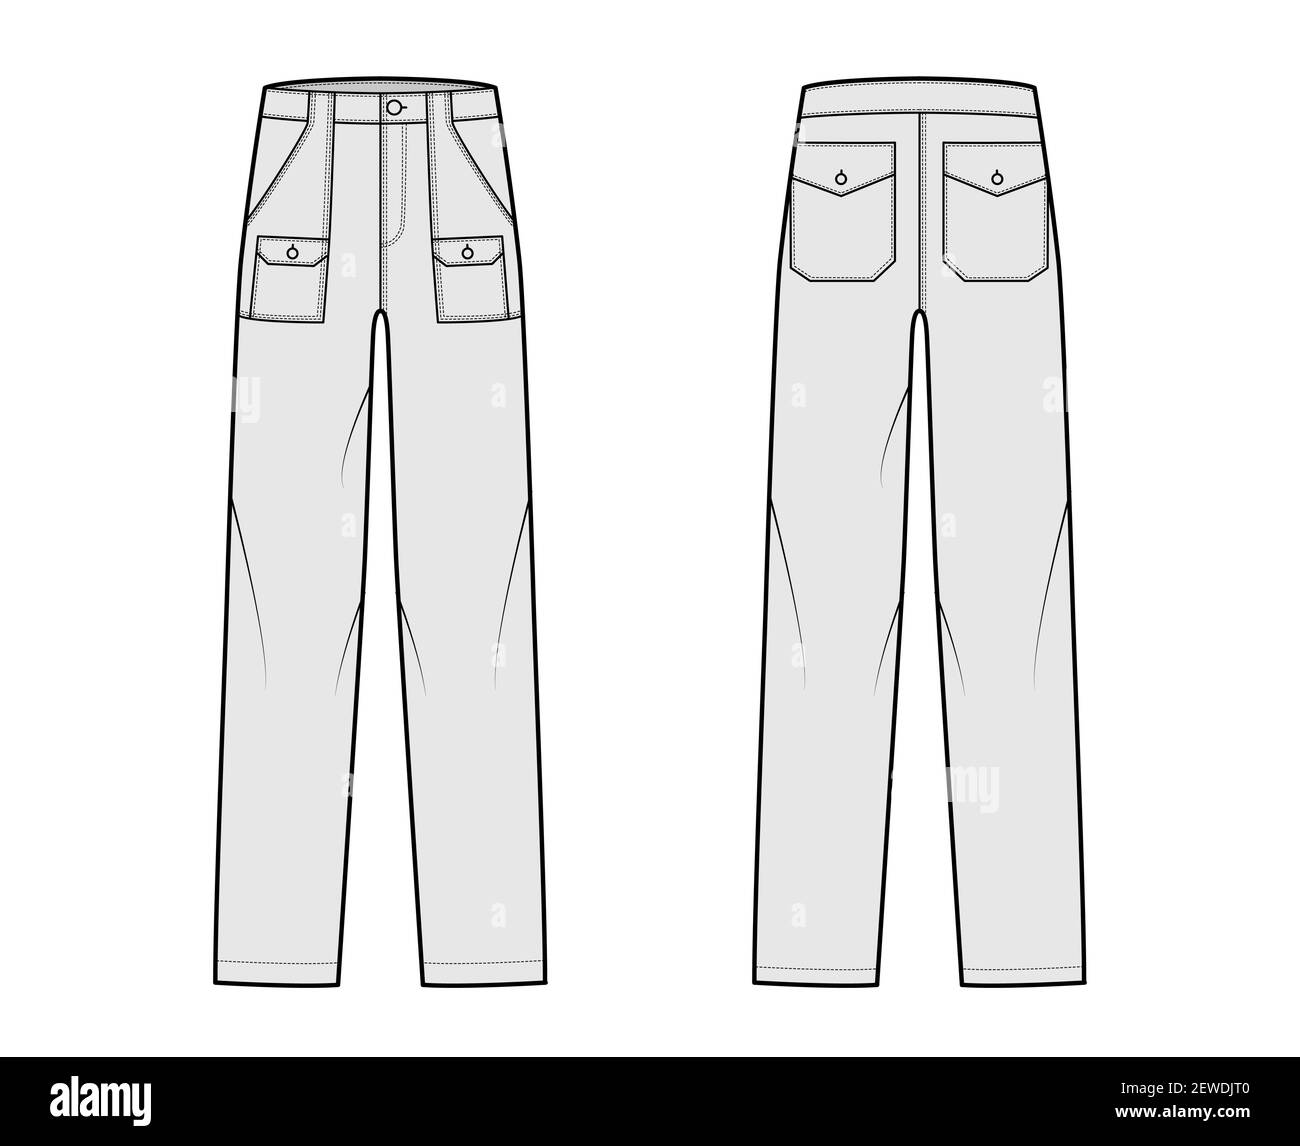 Bush pants Denim pants technical fashion illustration with low waist ...